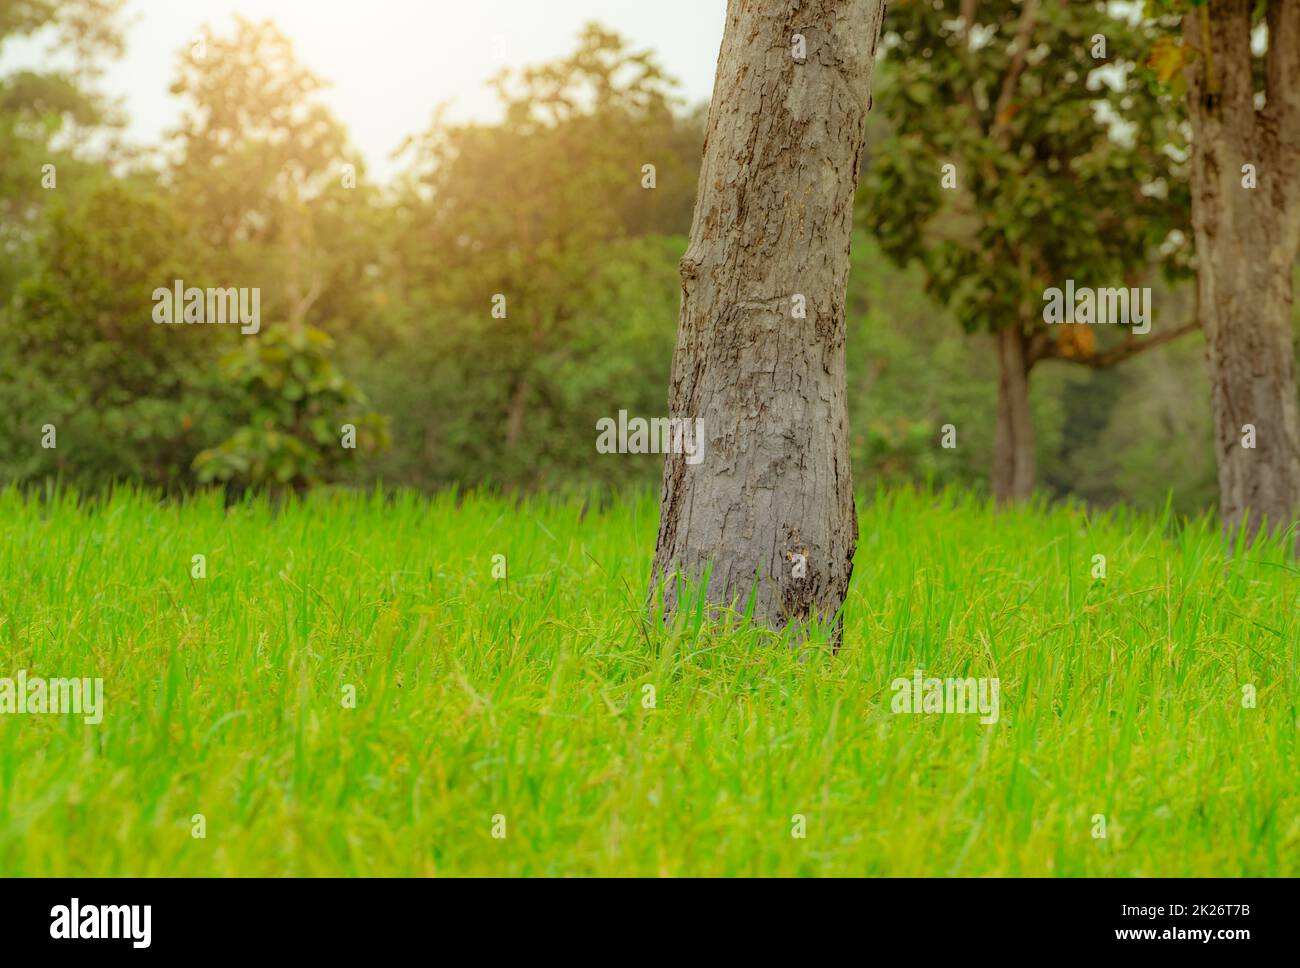 Árbol en un campo de arroz en Ubon Ratchathani, Tailandia. Plantación de arroz. Arrozales verdes. Cultivo de arroz orgánico en Asia. Granja agrícola cerca del bosque en las zonas rurales. Agricultura sostenible. Foto de stock